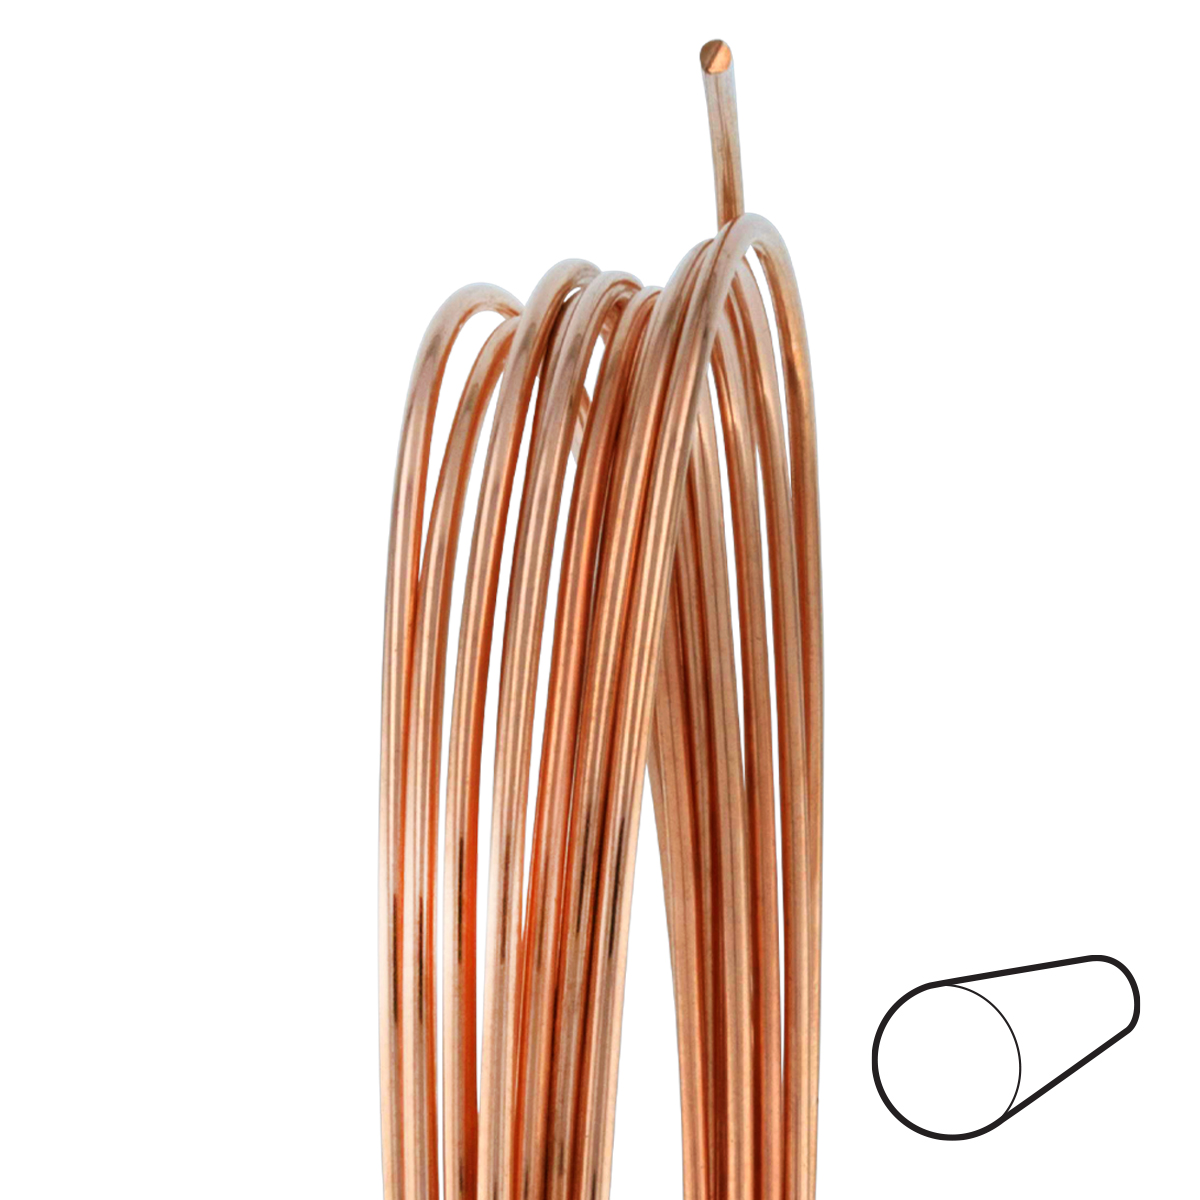 20 Gauge Round Dead Soft Copper Wire: Wire Jewelry